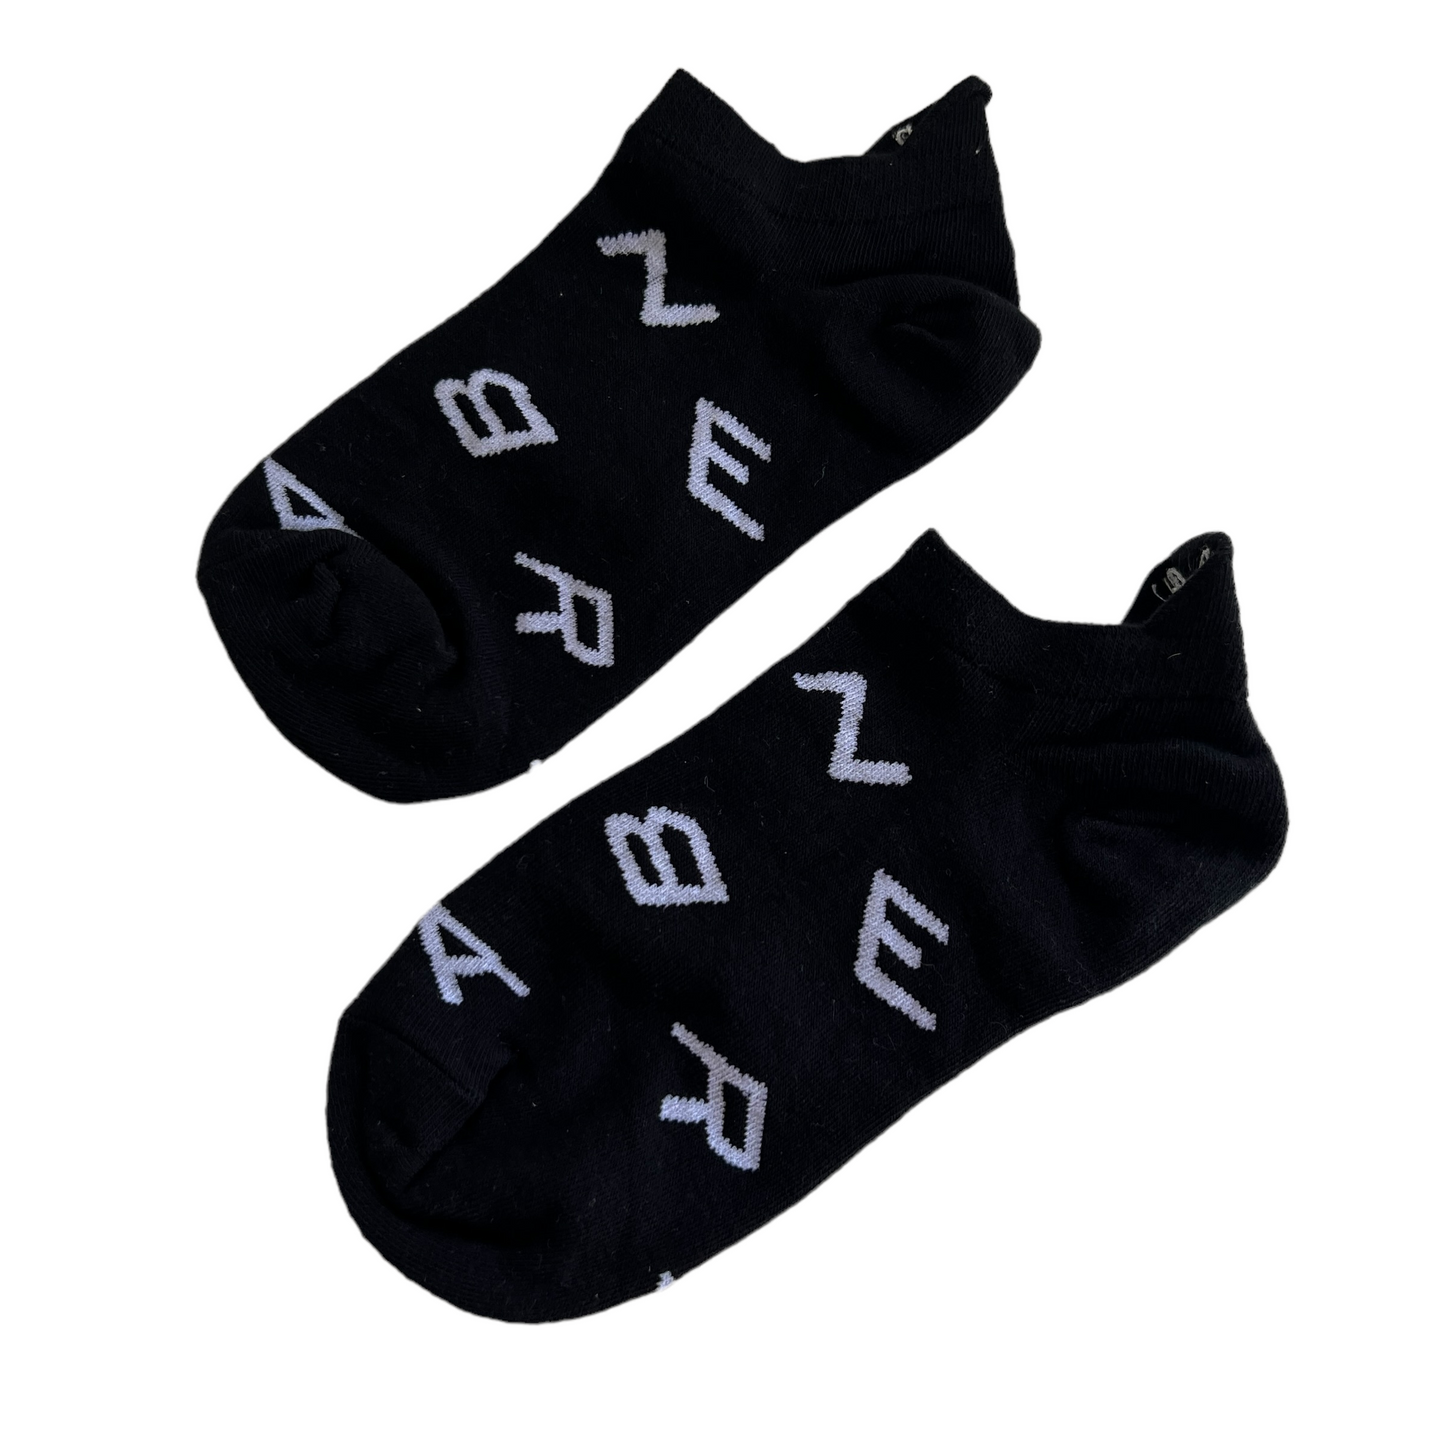 💰🎨 Ankle Socks — Zebra Socks SPIRIT SPARKPLUGS   